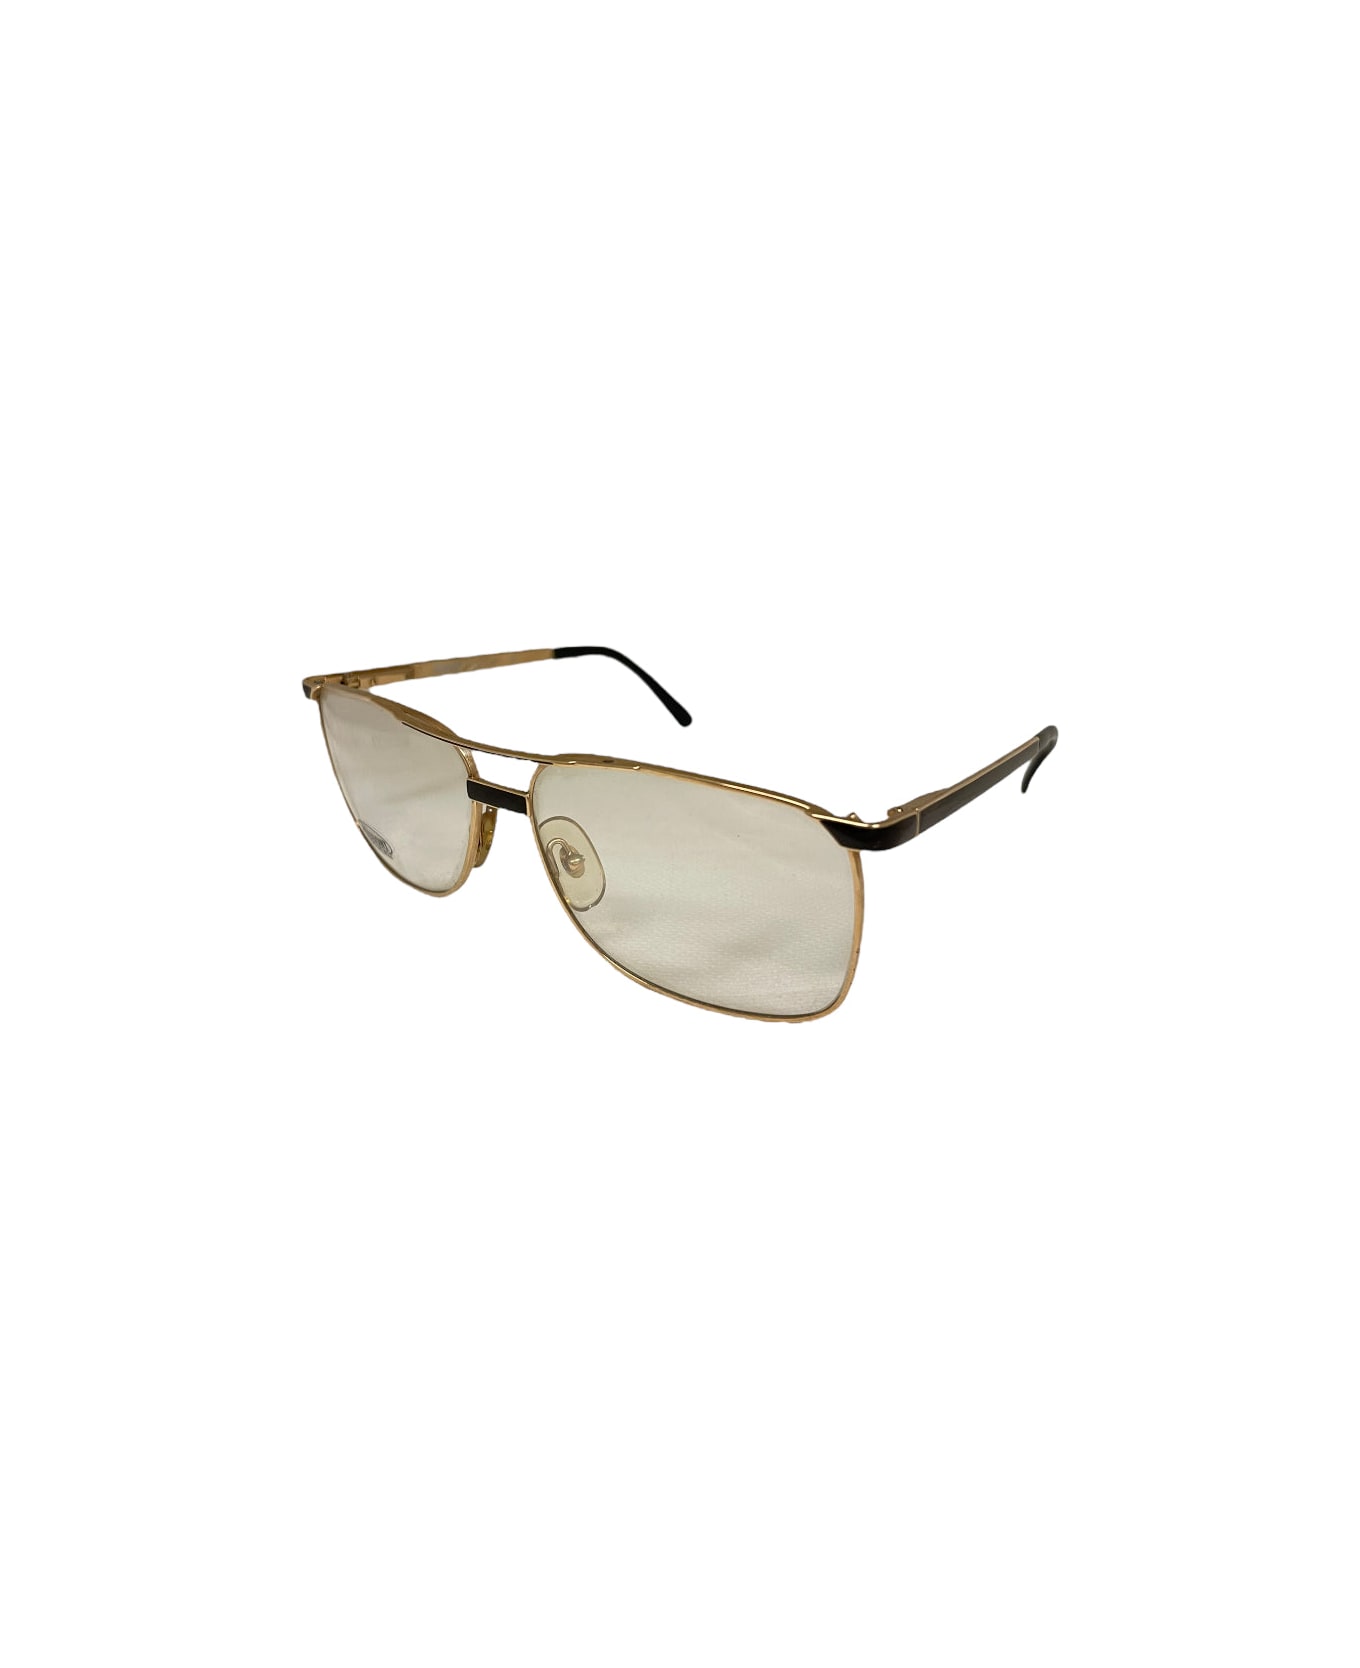 Missoni M 406 - Gold Glasses